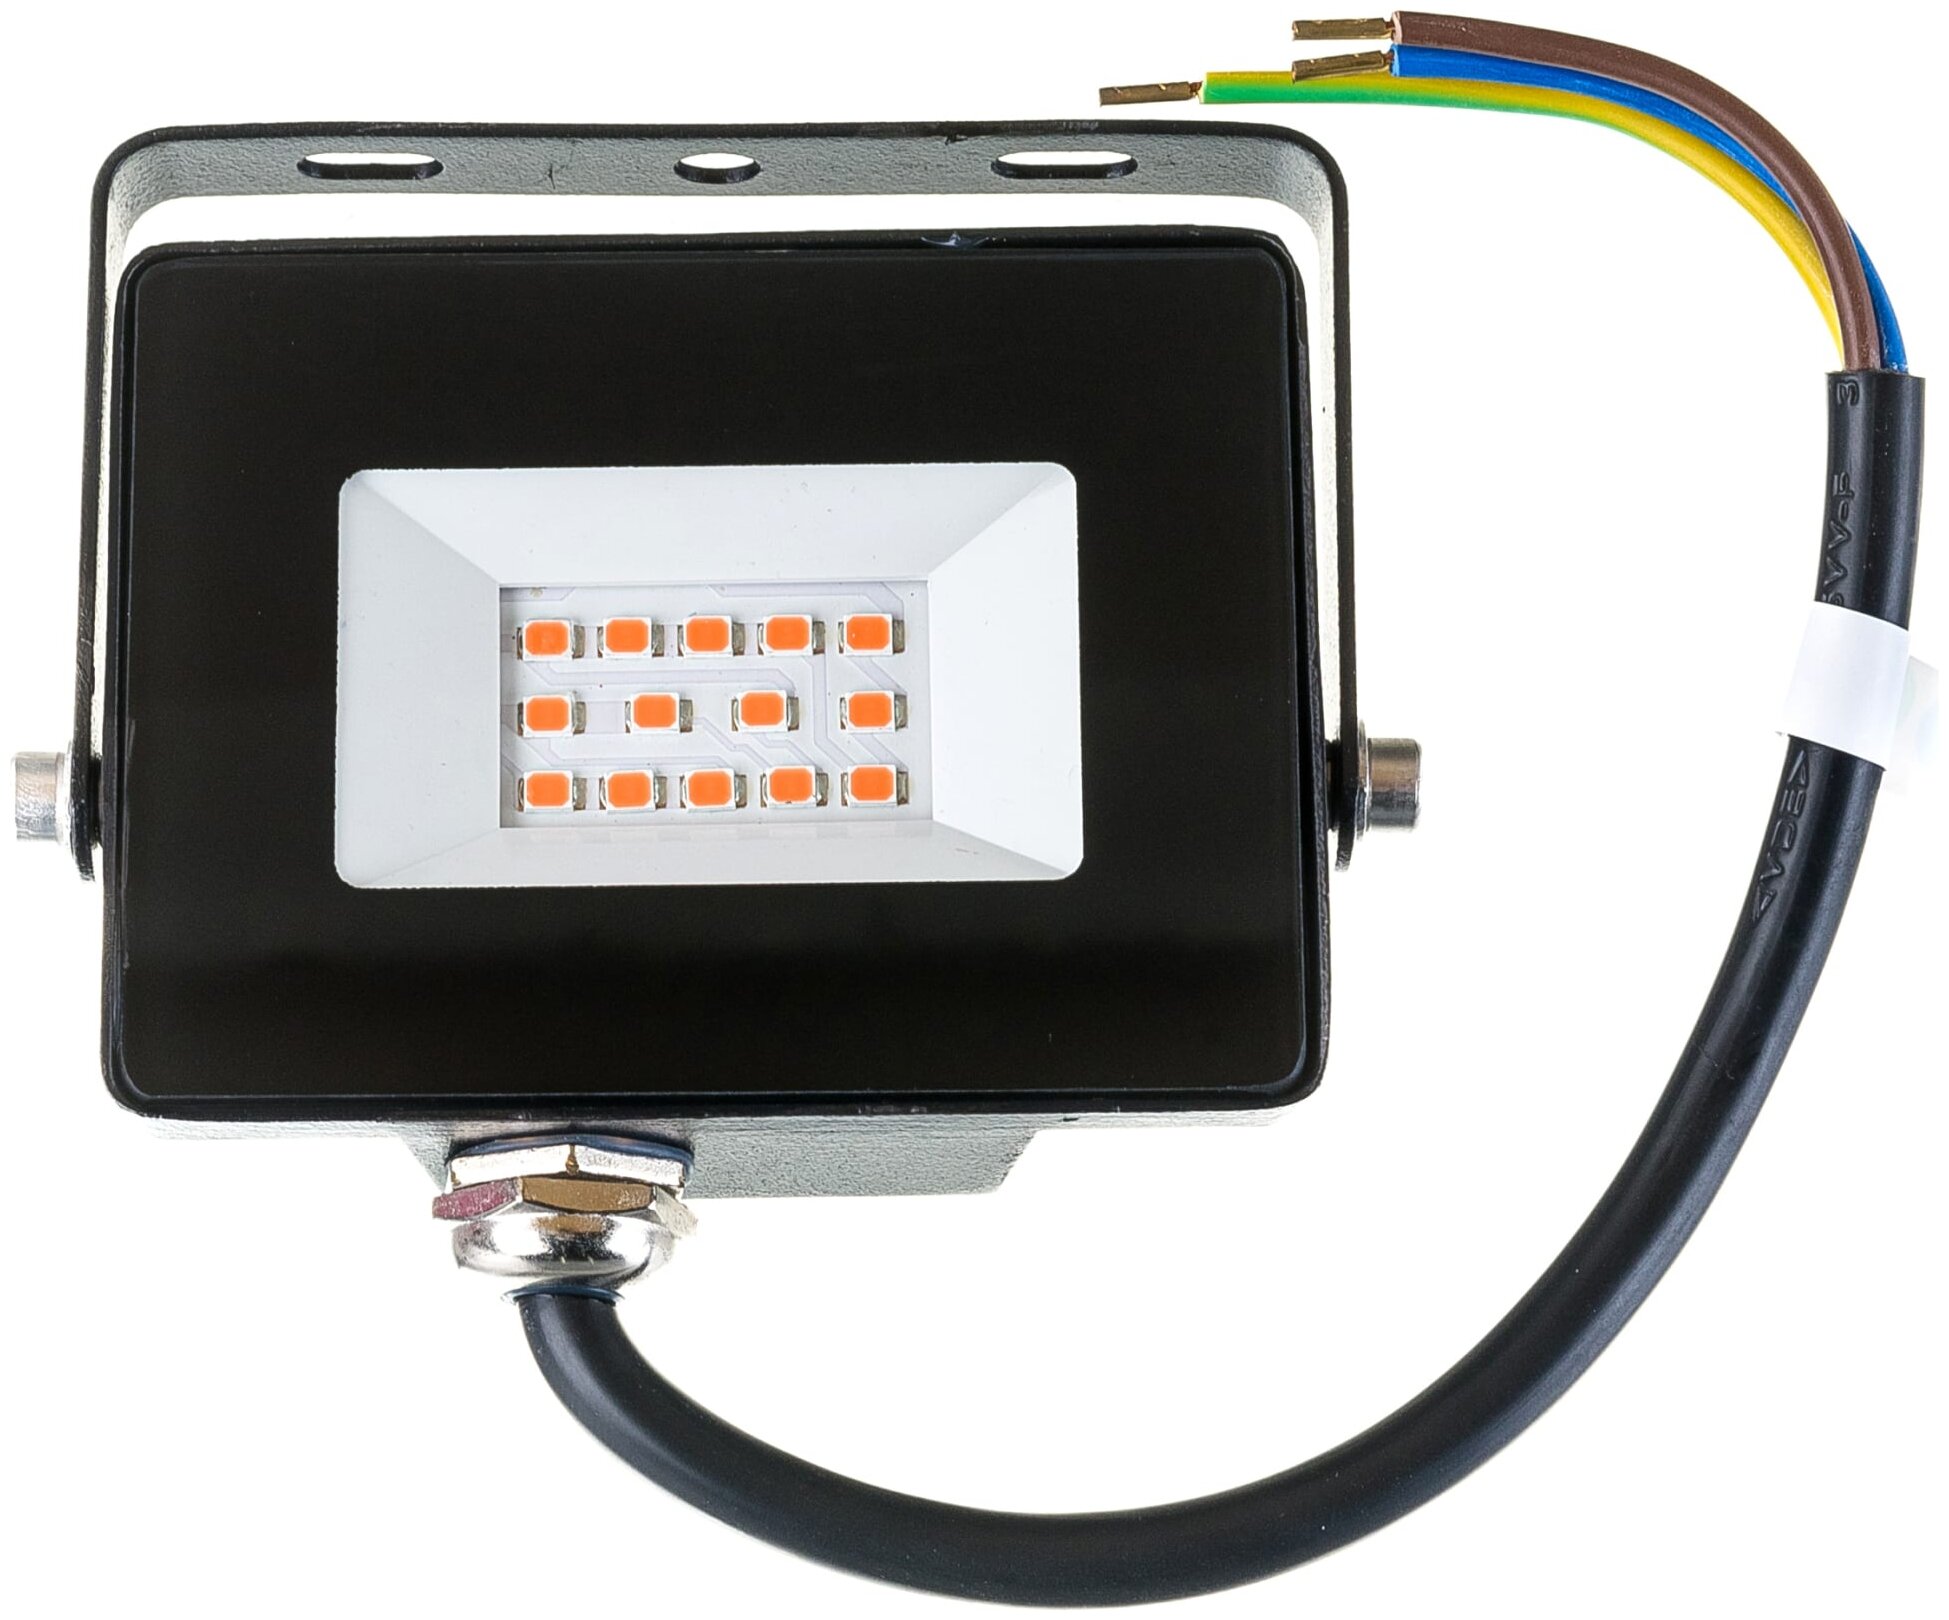 SmartBuy светильник для растений SBL-FLFITO-10-65K, черный